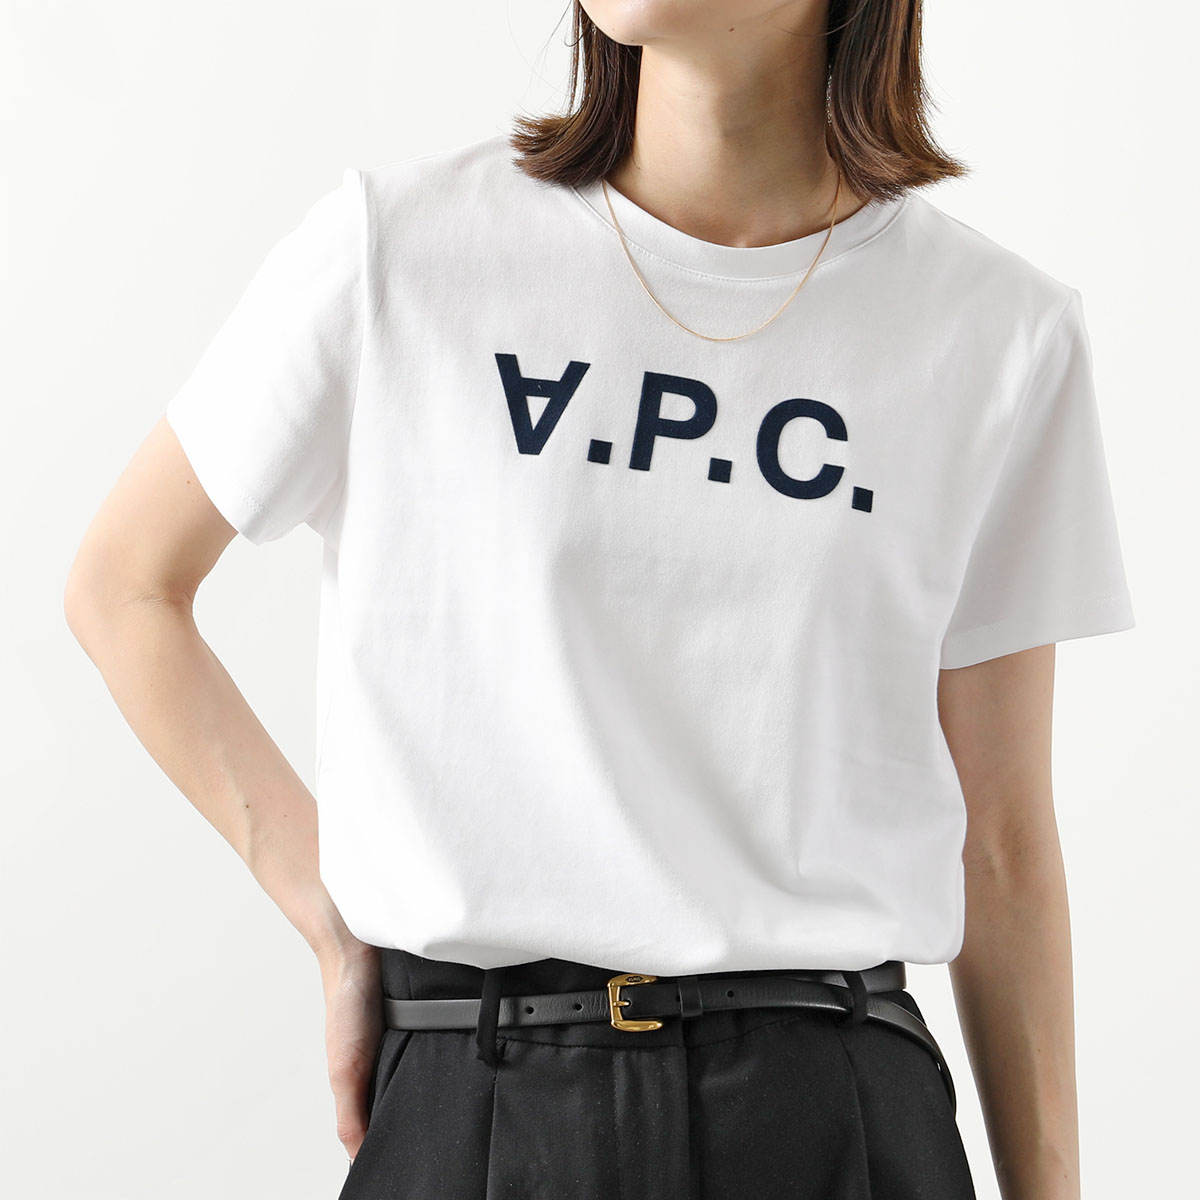 APC A.P.C. アーペーセー COBQX F26588 VPCTシャツ クルーネック 半袖 Tシャツ カットソー ロゴT  DARKNAVY/ホワイト×ネイビー レディース